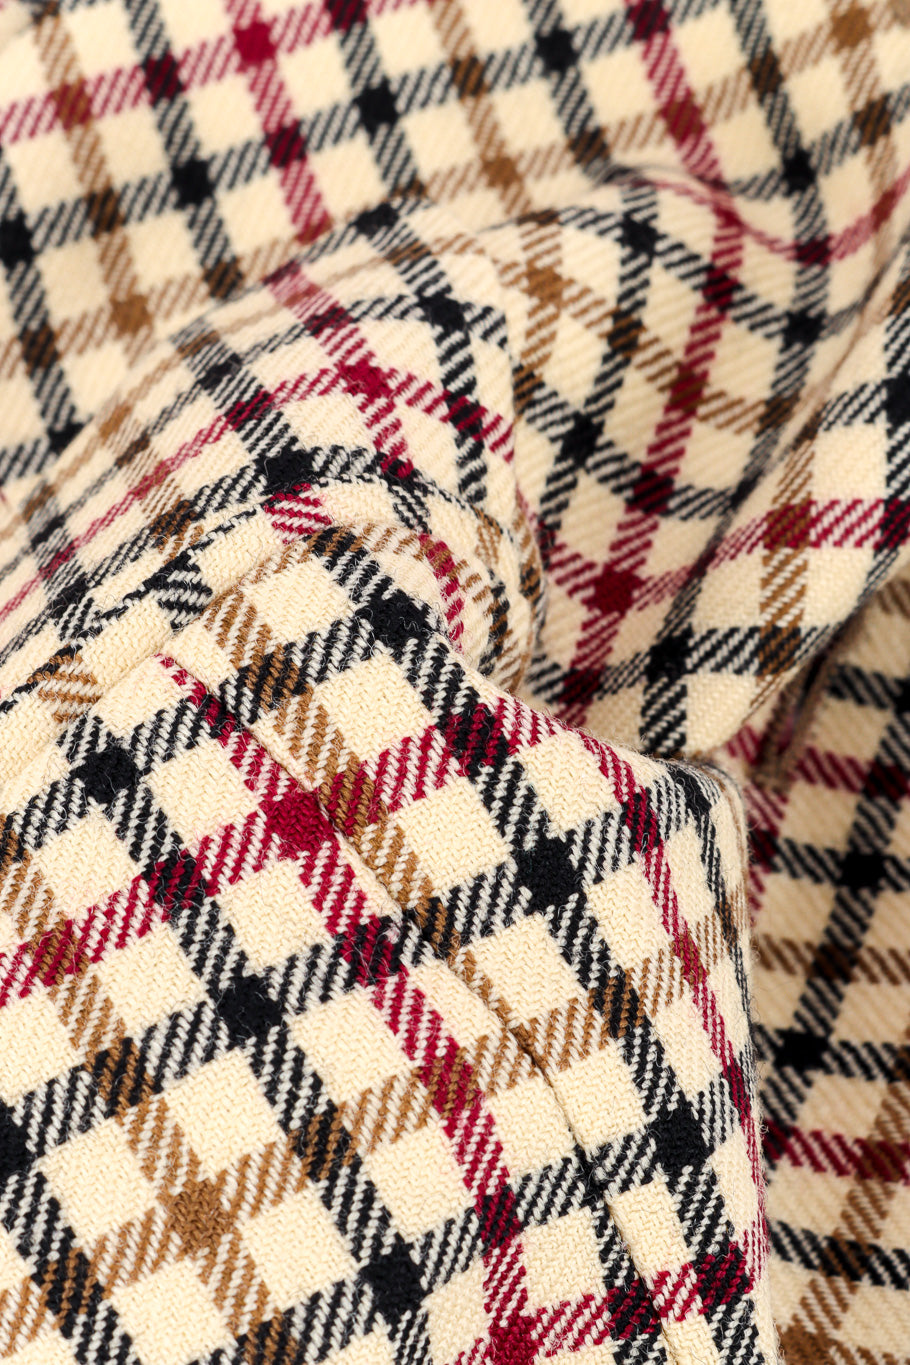 2011 F/W Gingham Vest & Trouser Set by Vivienne Westwood fabric close @recessla